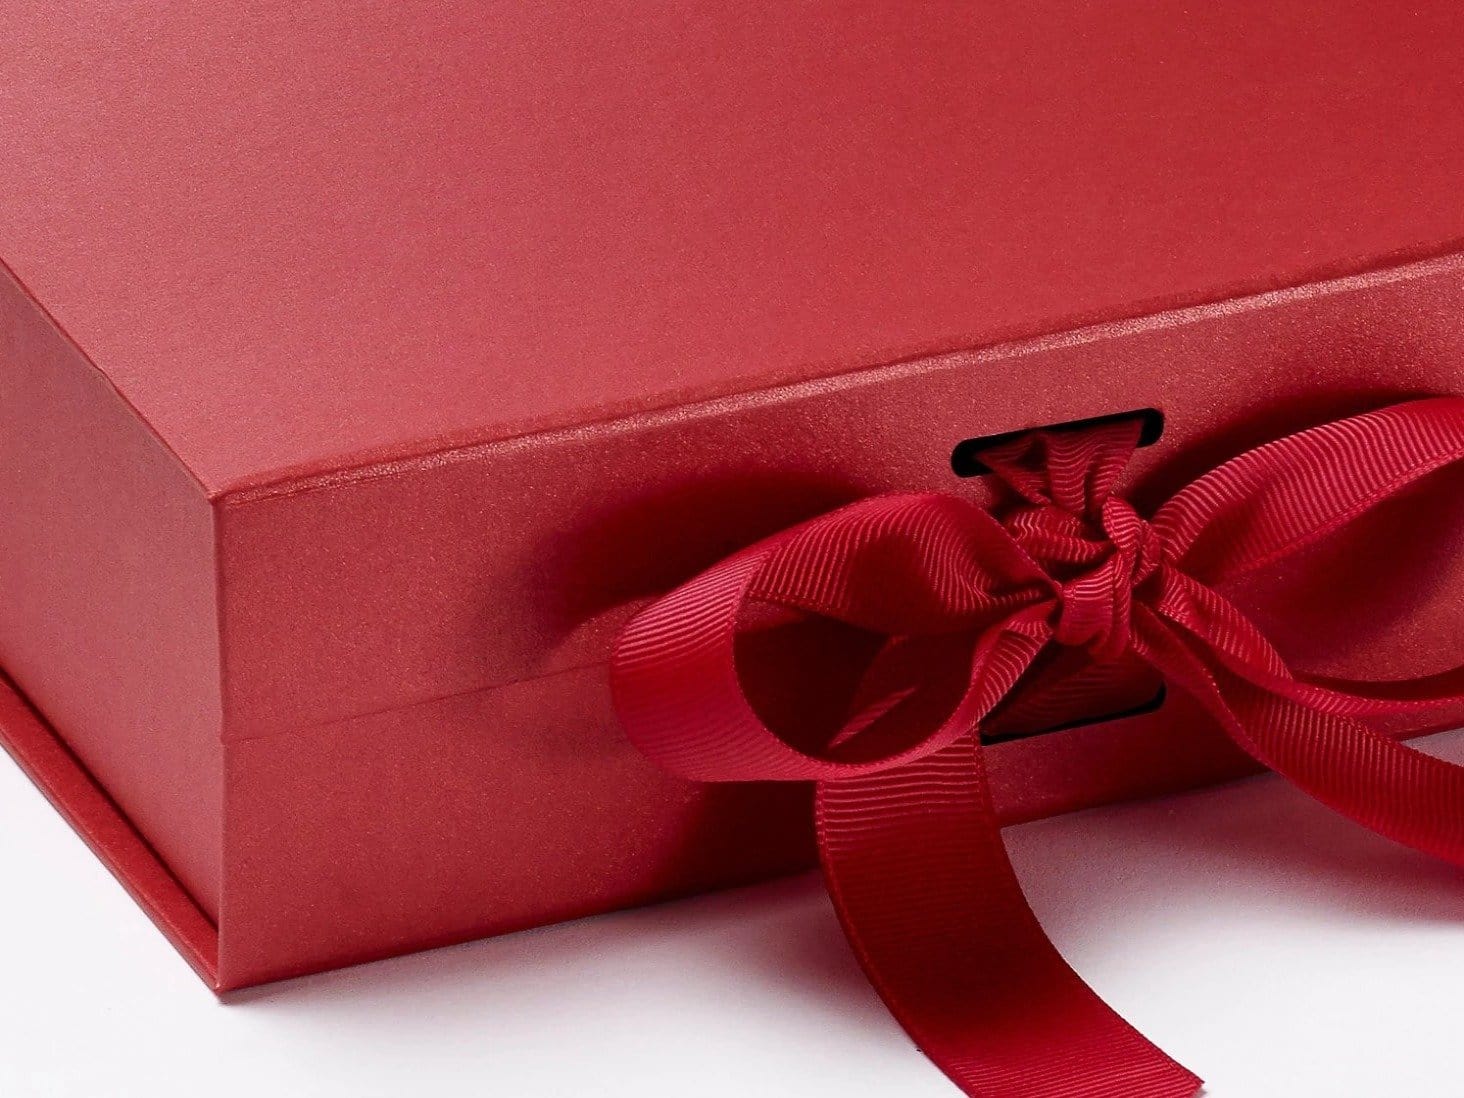 Sample Pearl Red Medium Gift Box with Slots and Ribbon